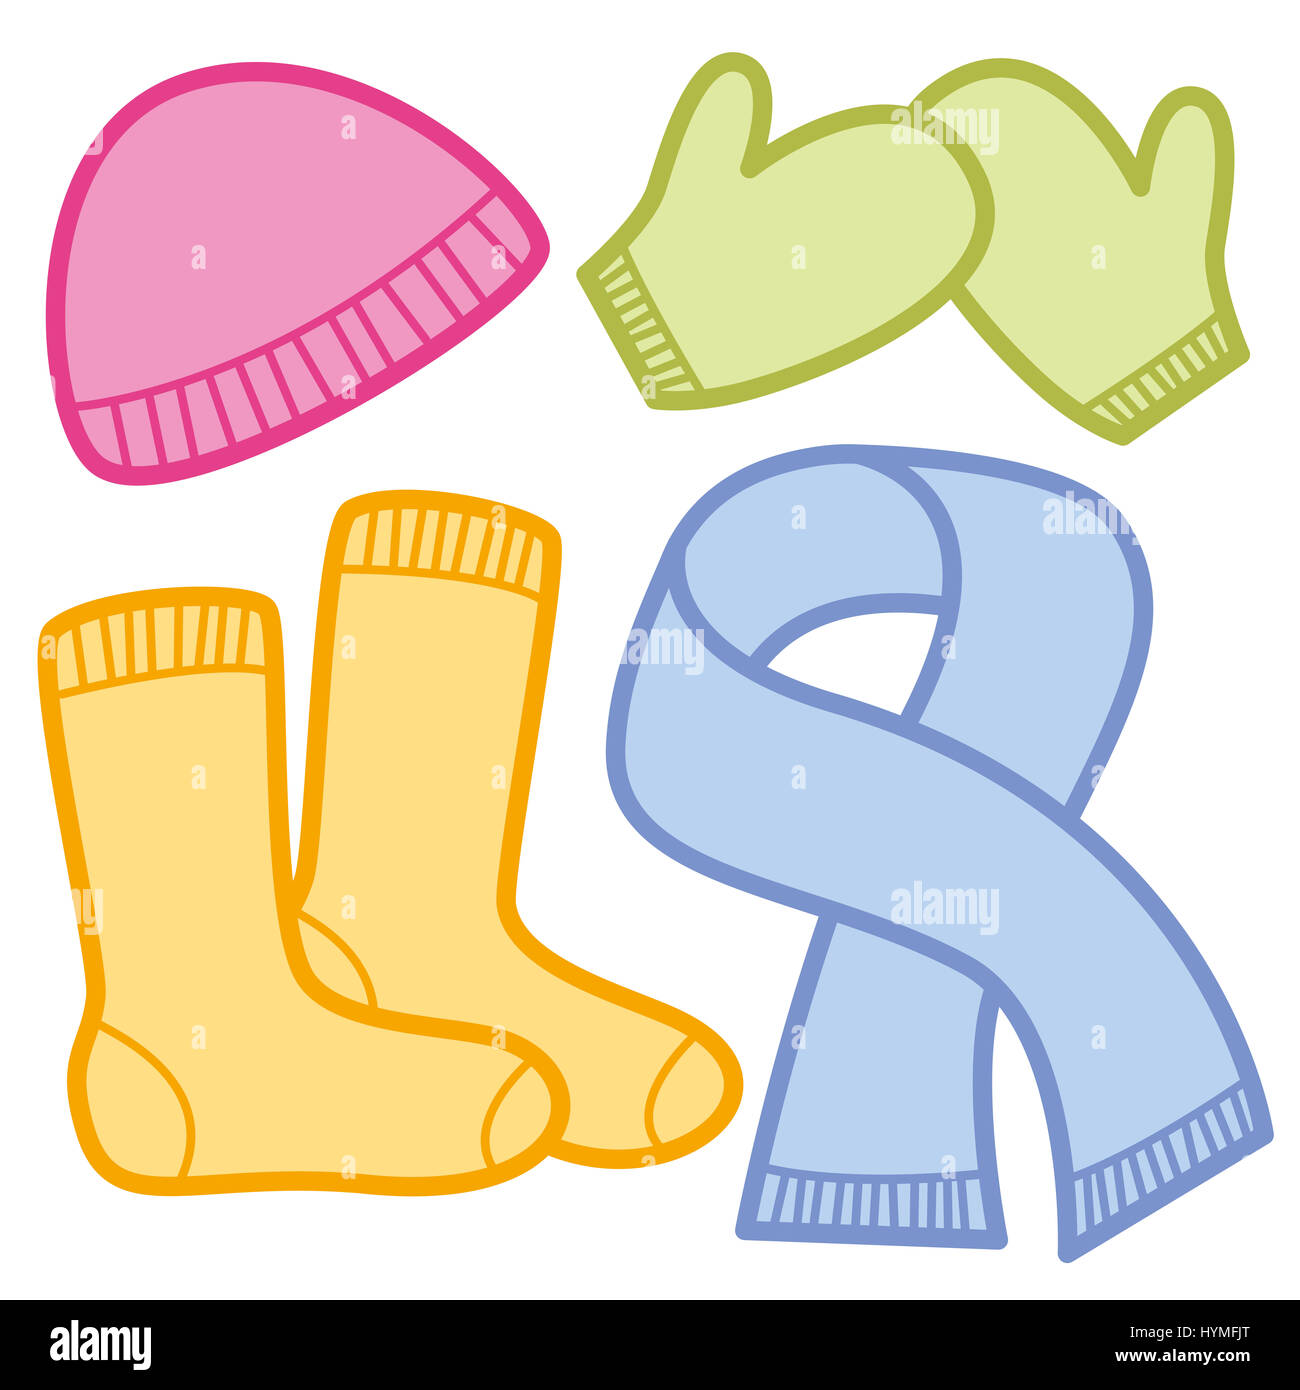 Winter Kleidung Comic-Ikonen - bunte Tücher für die kalte Jahreszeit - rosa Wollmütze, grüne Fäustlinge, orange Socken und blauen Schal. Abbildung. Stockfoto